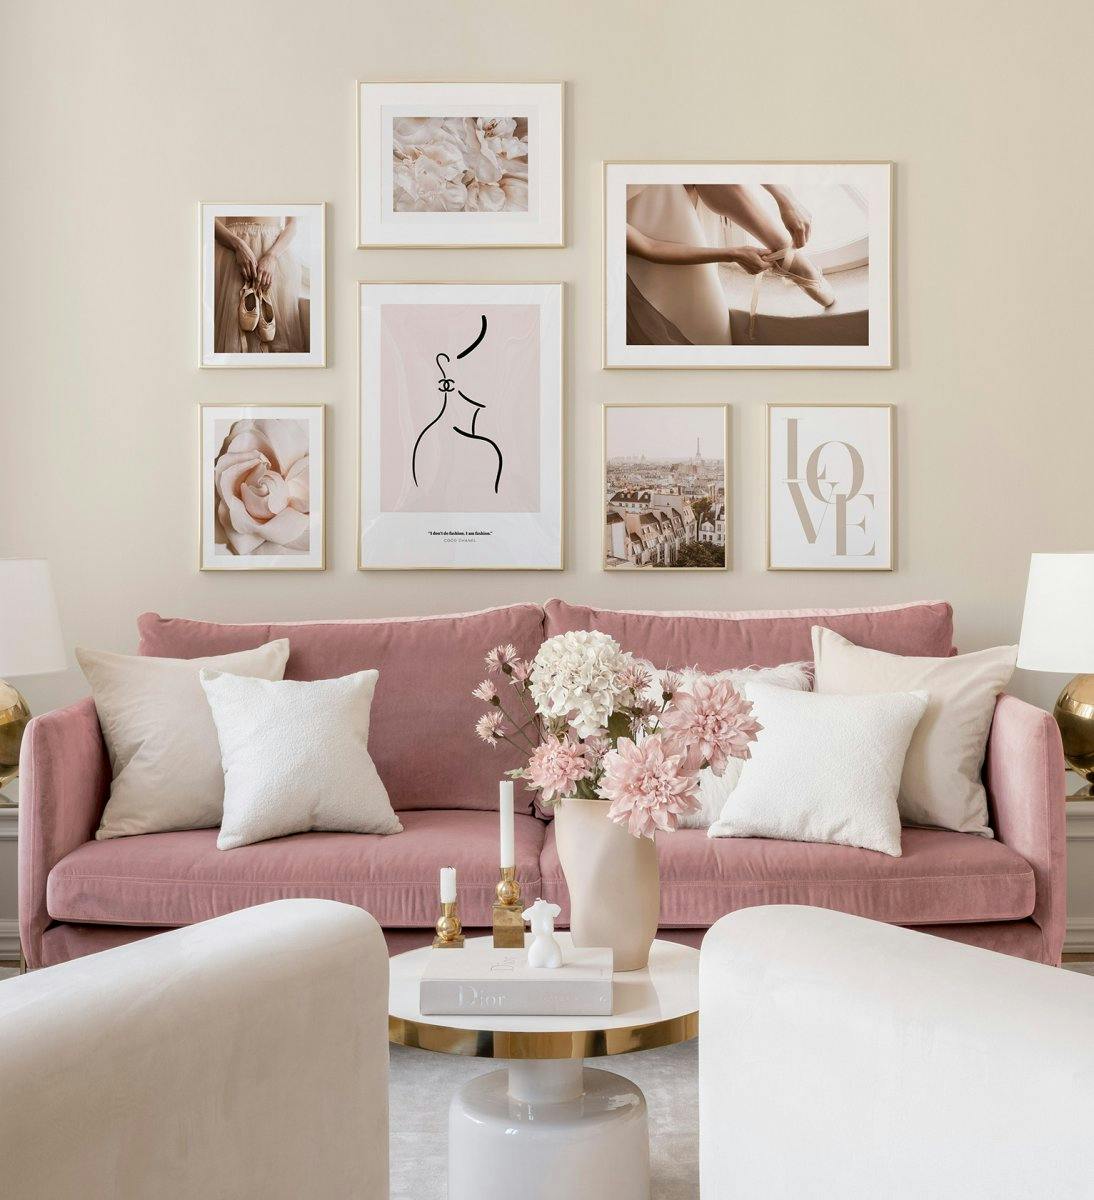 Elegante galleria a parete per il soggiorno in tonalità rosate racchiuse in cornici dorate.